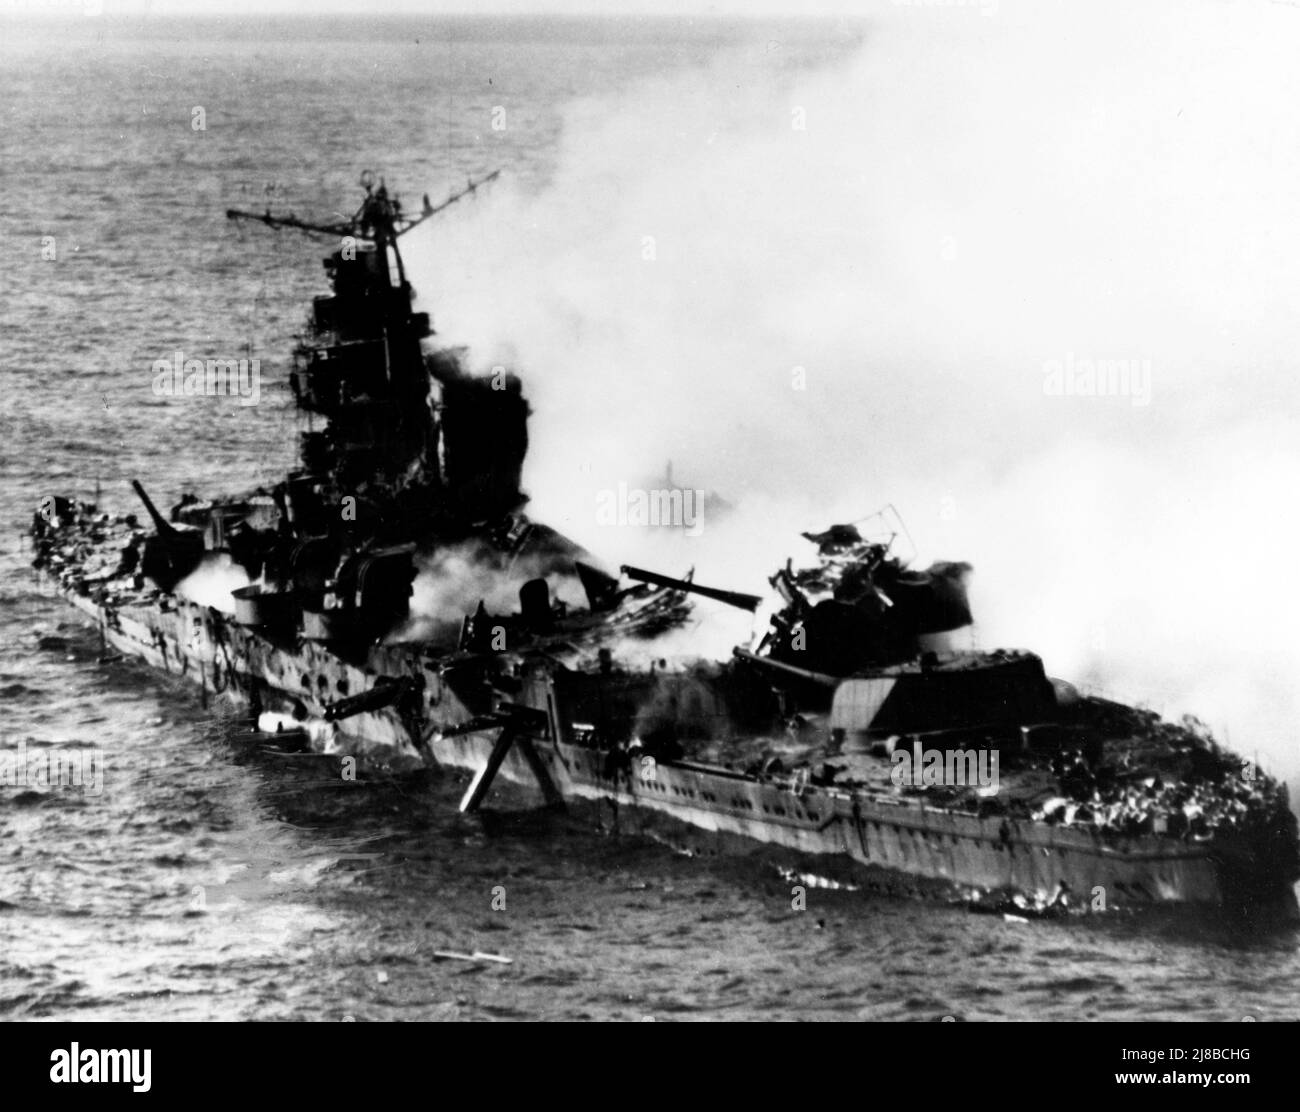 Der japanische schwere Kreuzer Mikuma, fotografiert von einer USS Enterprise Douglas SBD-3 Dauntless, nachdem sie von Flugzeugen von Enterprise und USS Hornet bombardiert worden war. Das Schiff ist stark beschädigt und sank bald darauf, Stockfoto